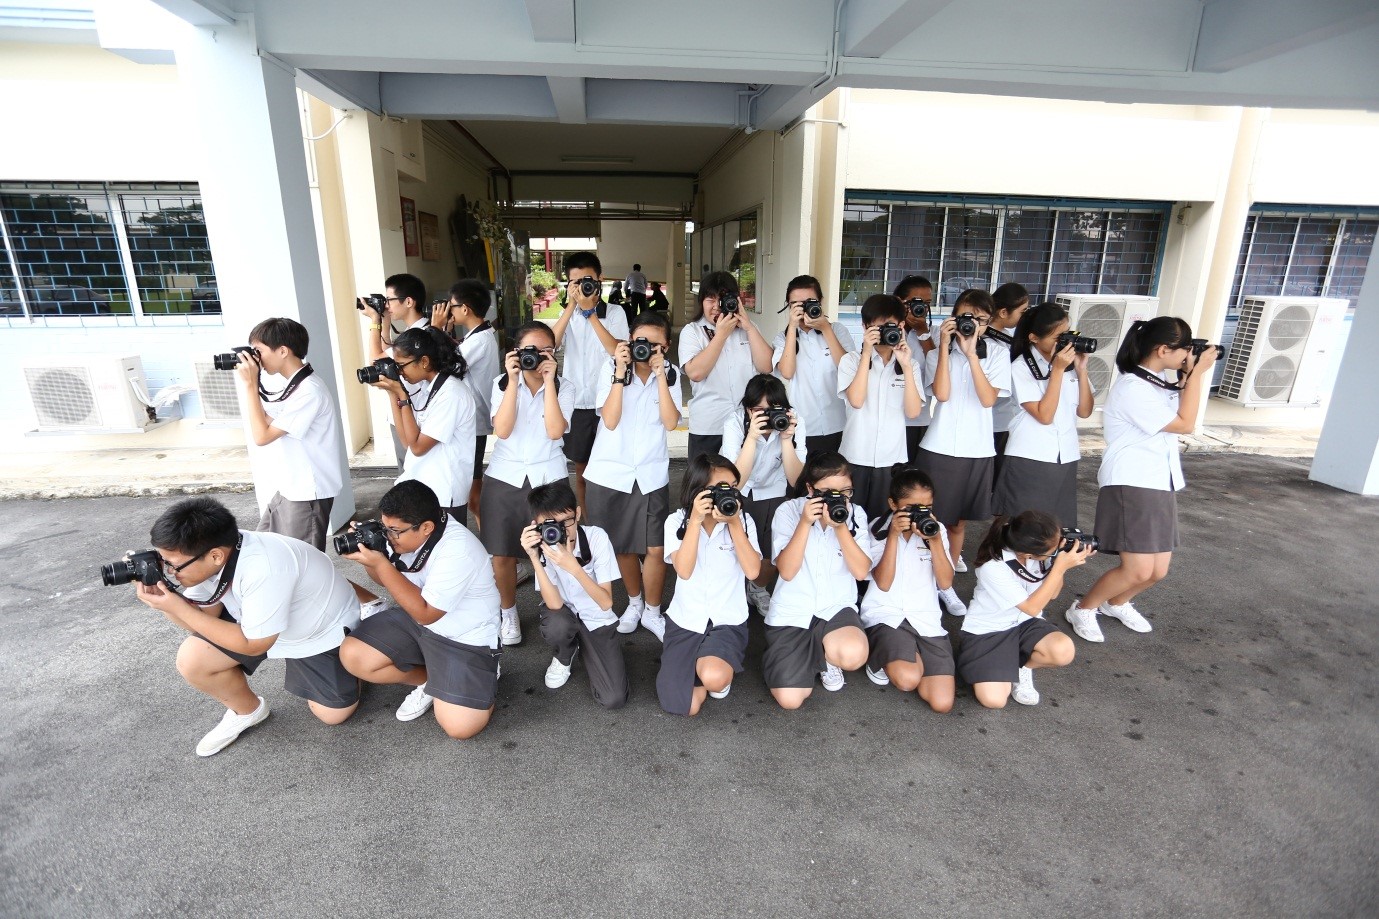 SSU Singapore School Uniforms: SSS Siglap Secondary School